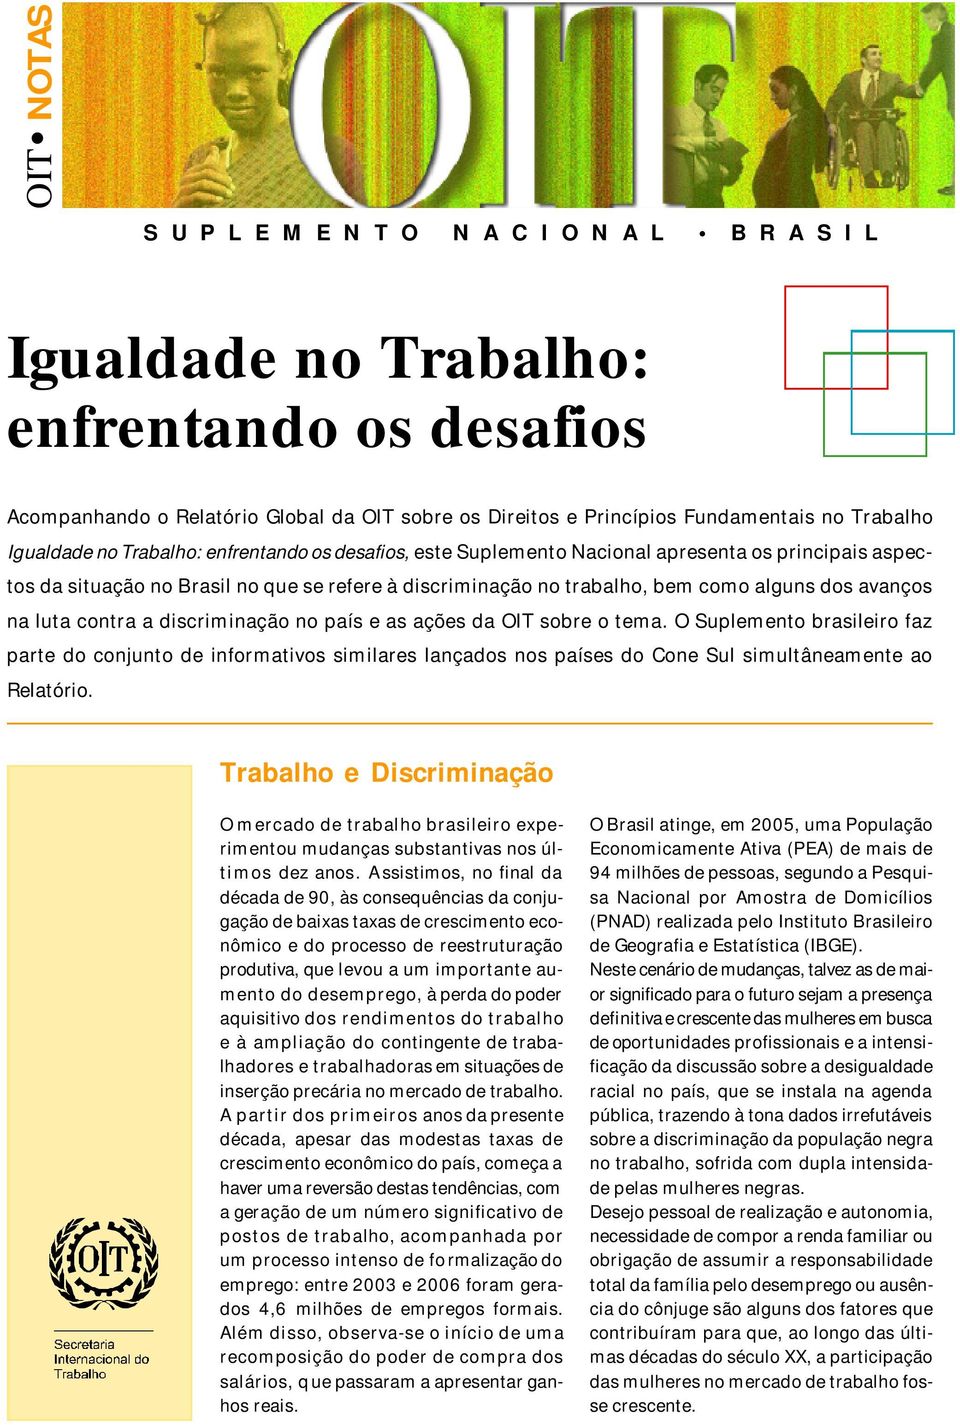 contra a discriminação no país e as ações da OIT sobre o tema. O Suplemento brasileiro faz parte do conjunto de informativos similares lançados nos países do Cone Sul simultâneamente ao Relatório.